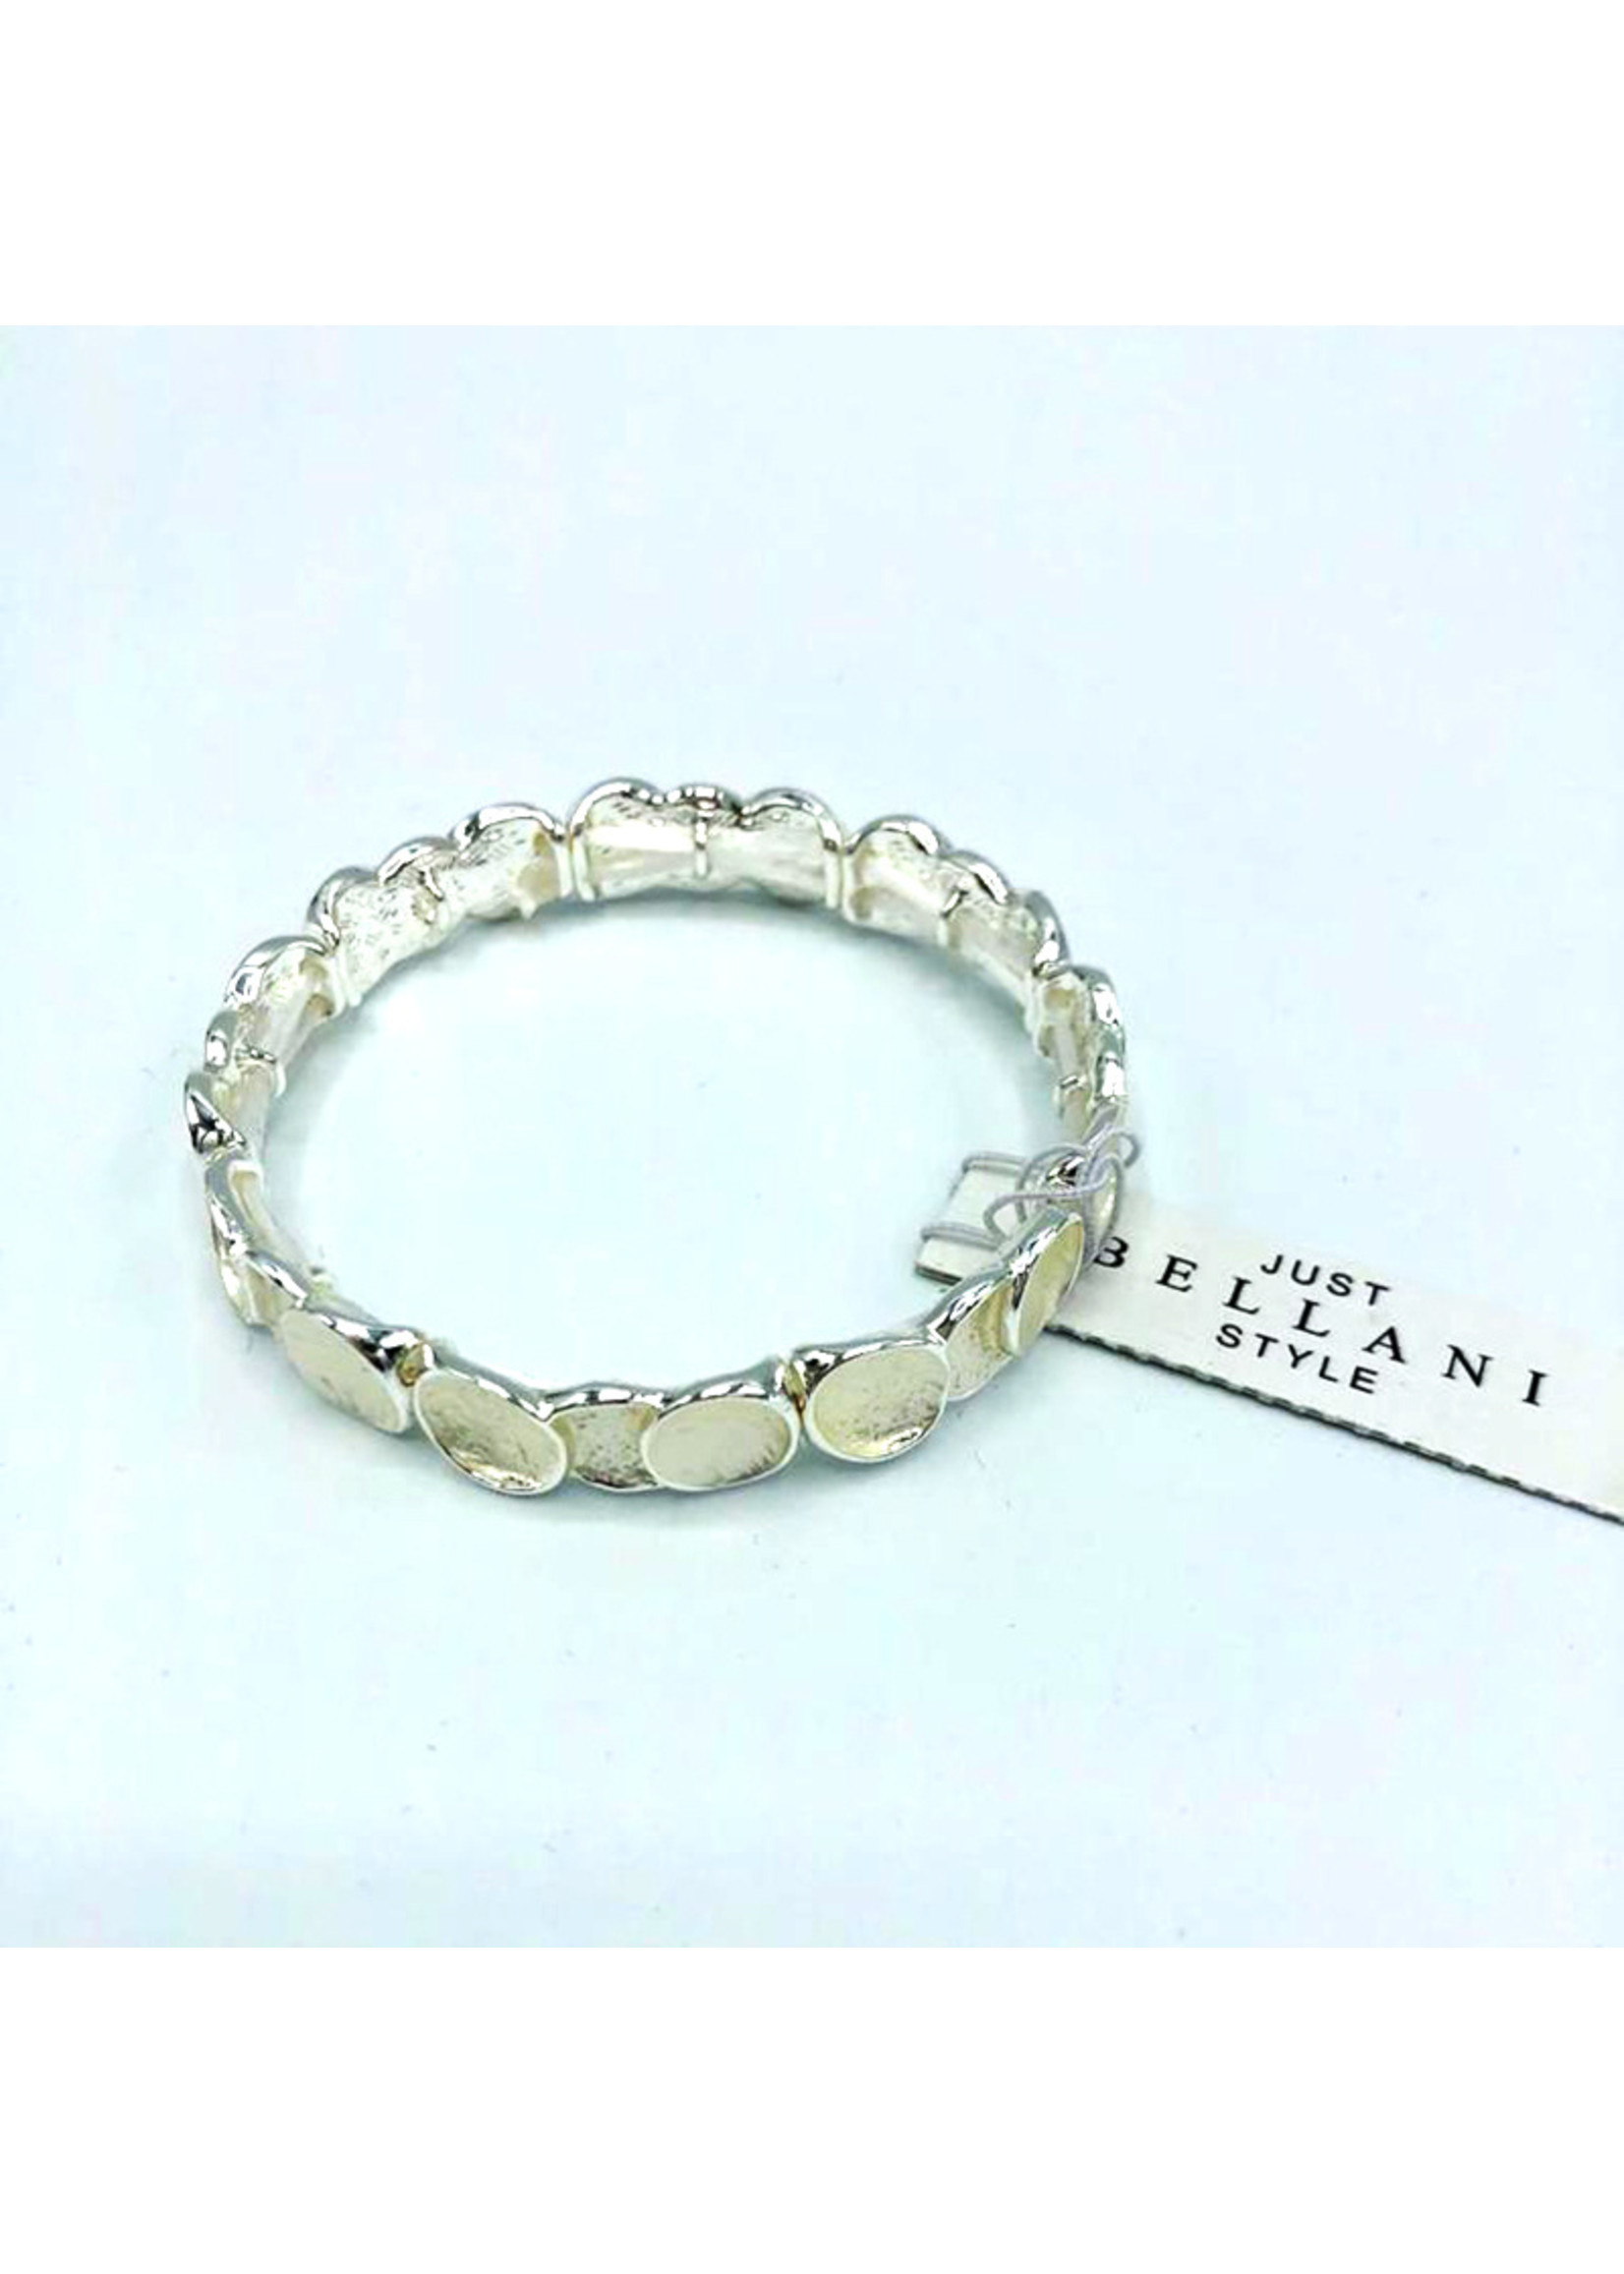 Just Bellani Style Bracelet Argent de Maman - Just Bellani Style